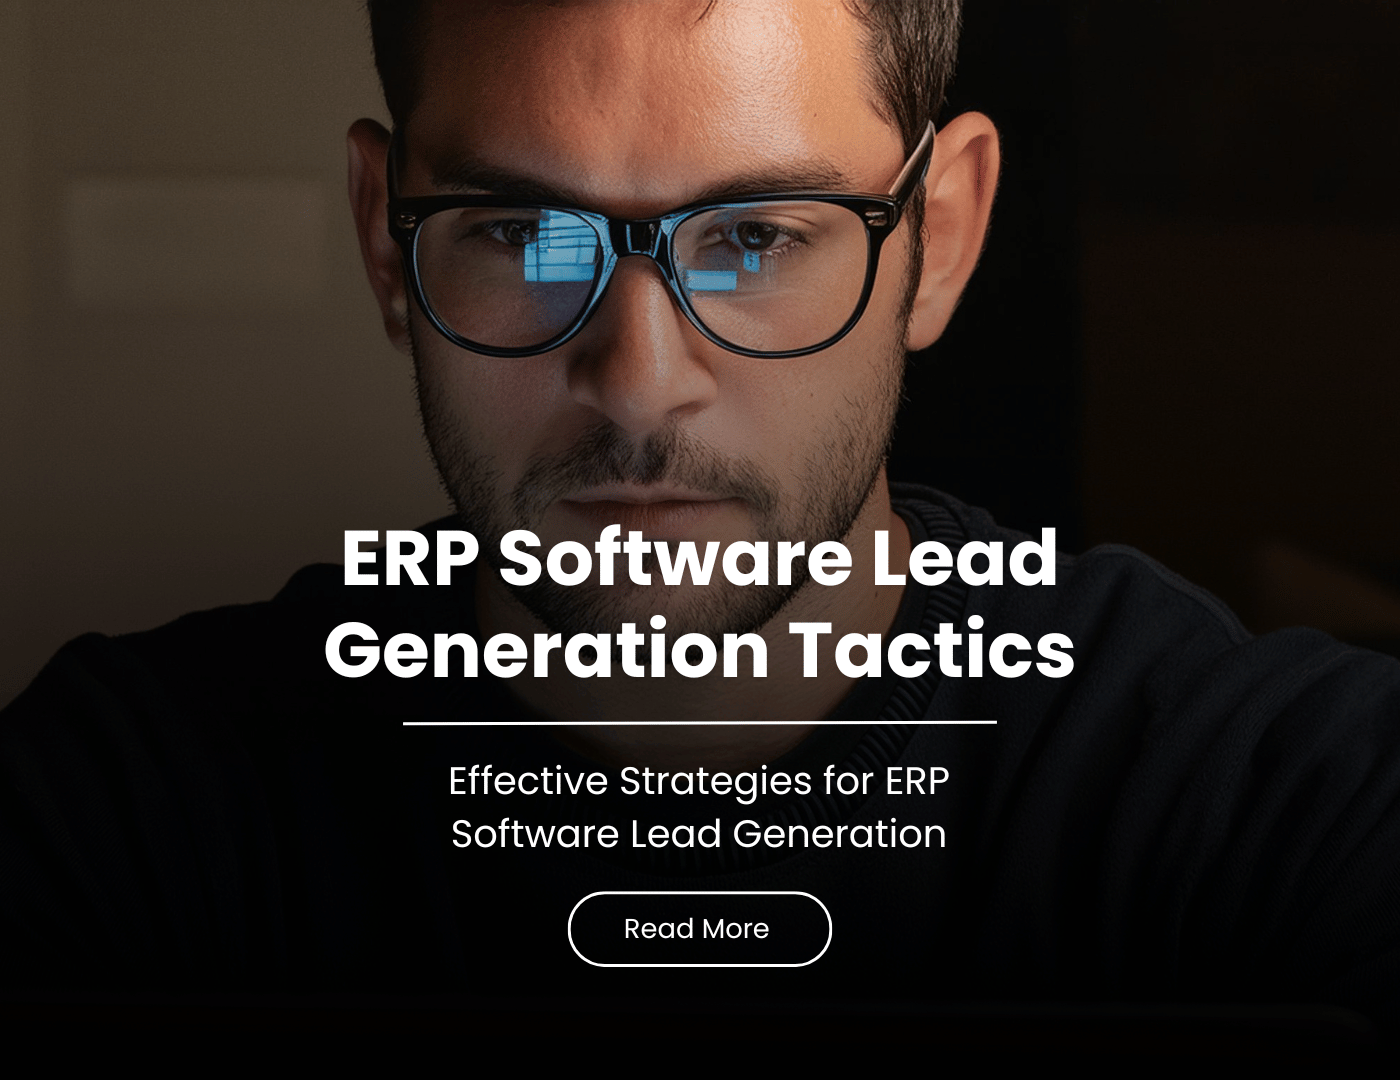 ERP software lead Generation tactics